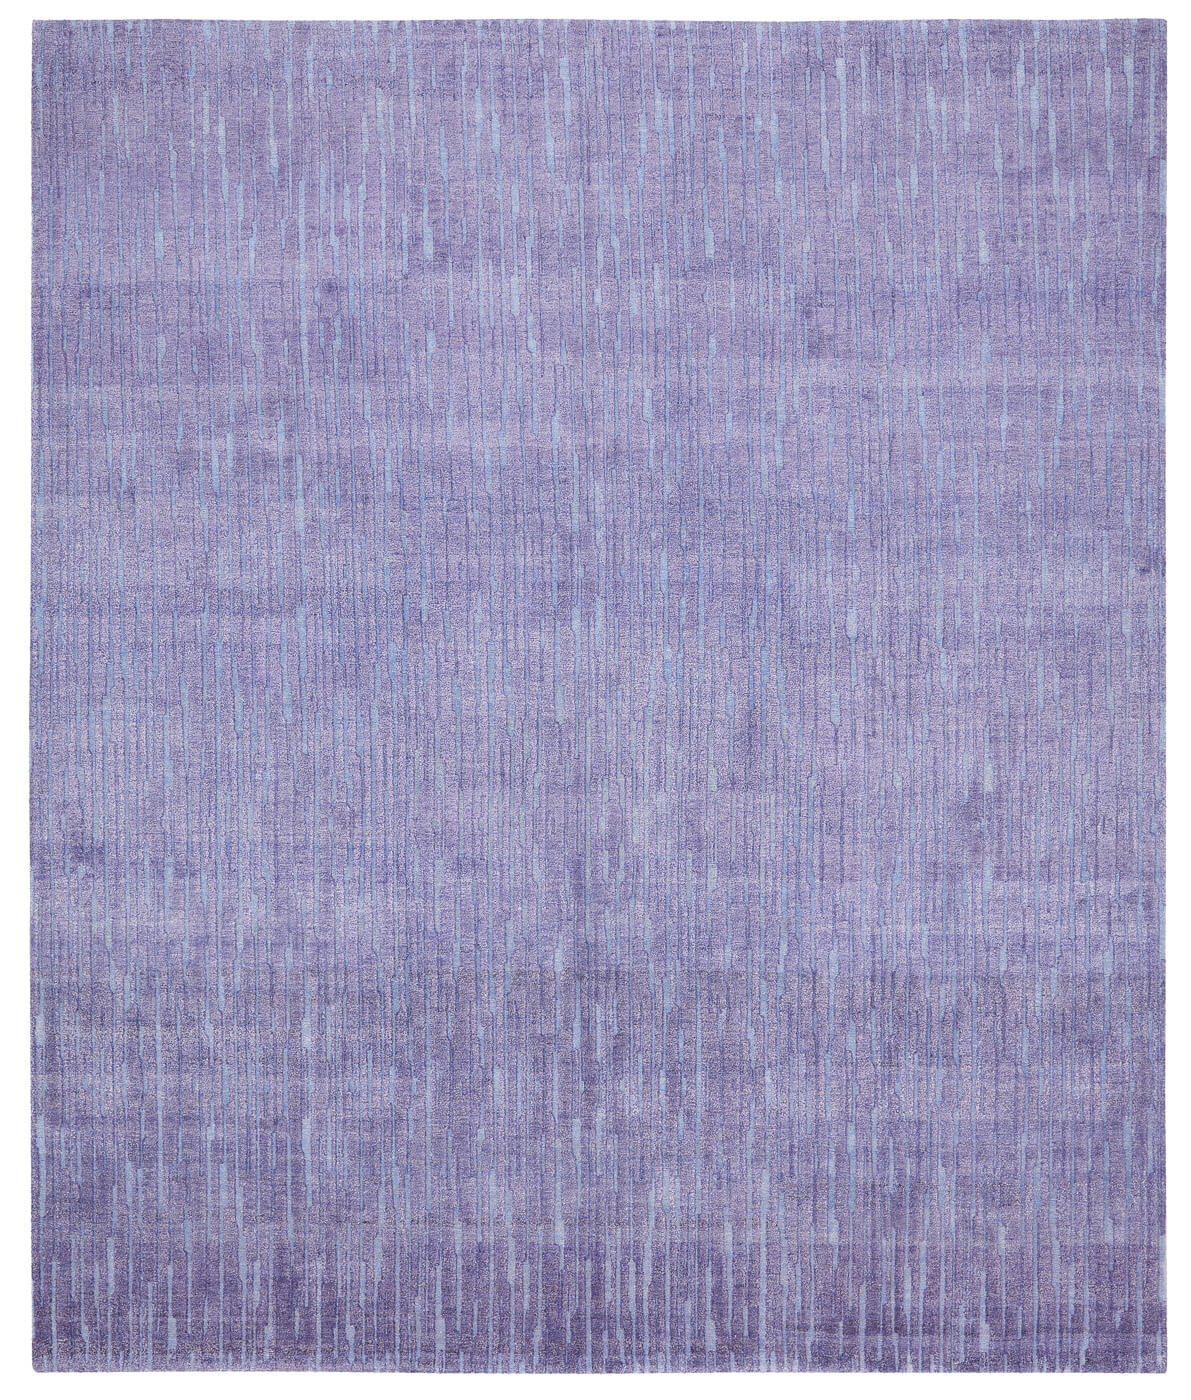 Элитный ковер Rekja фиолетовый германского бренда Jan Kath